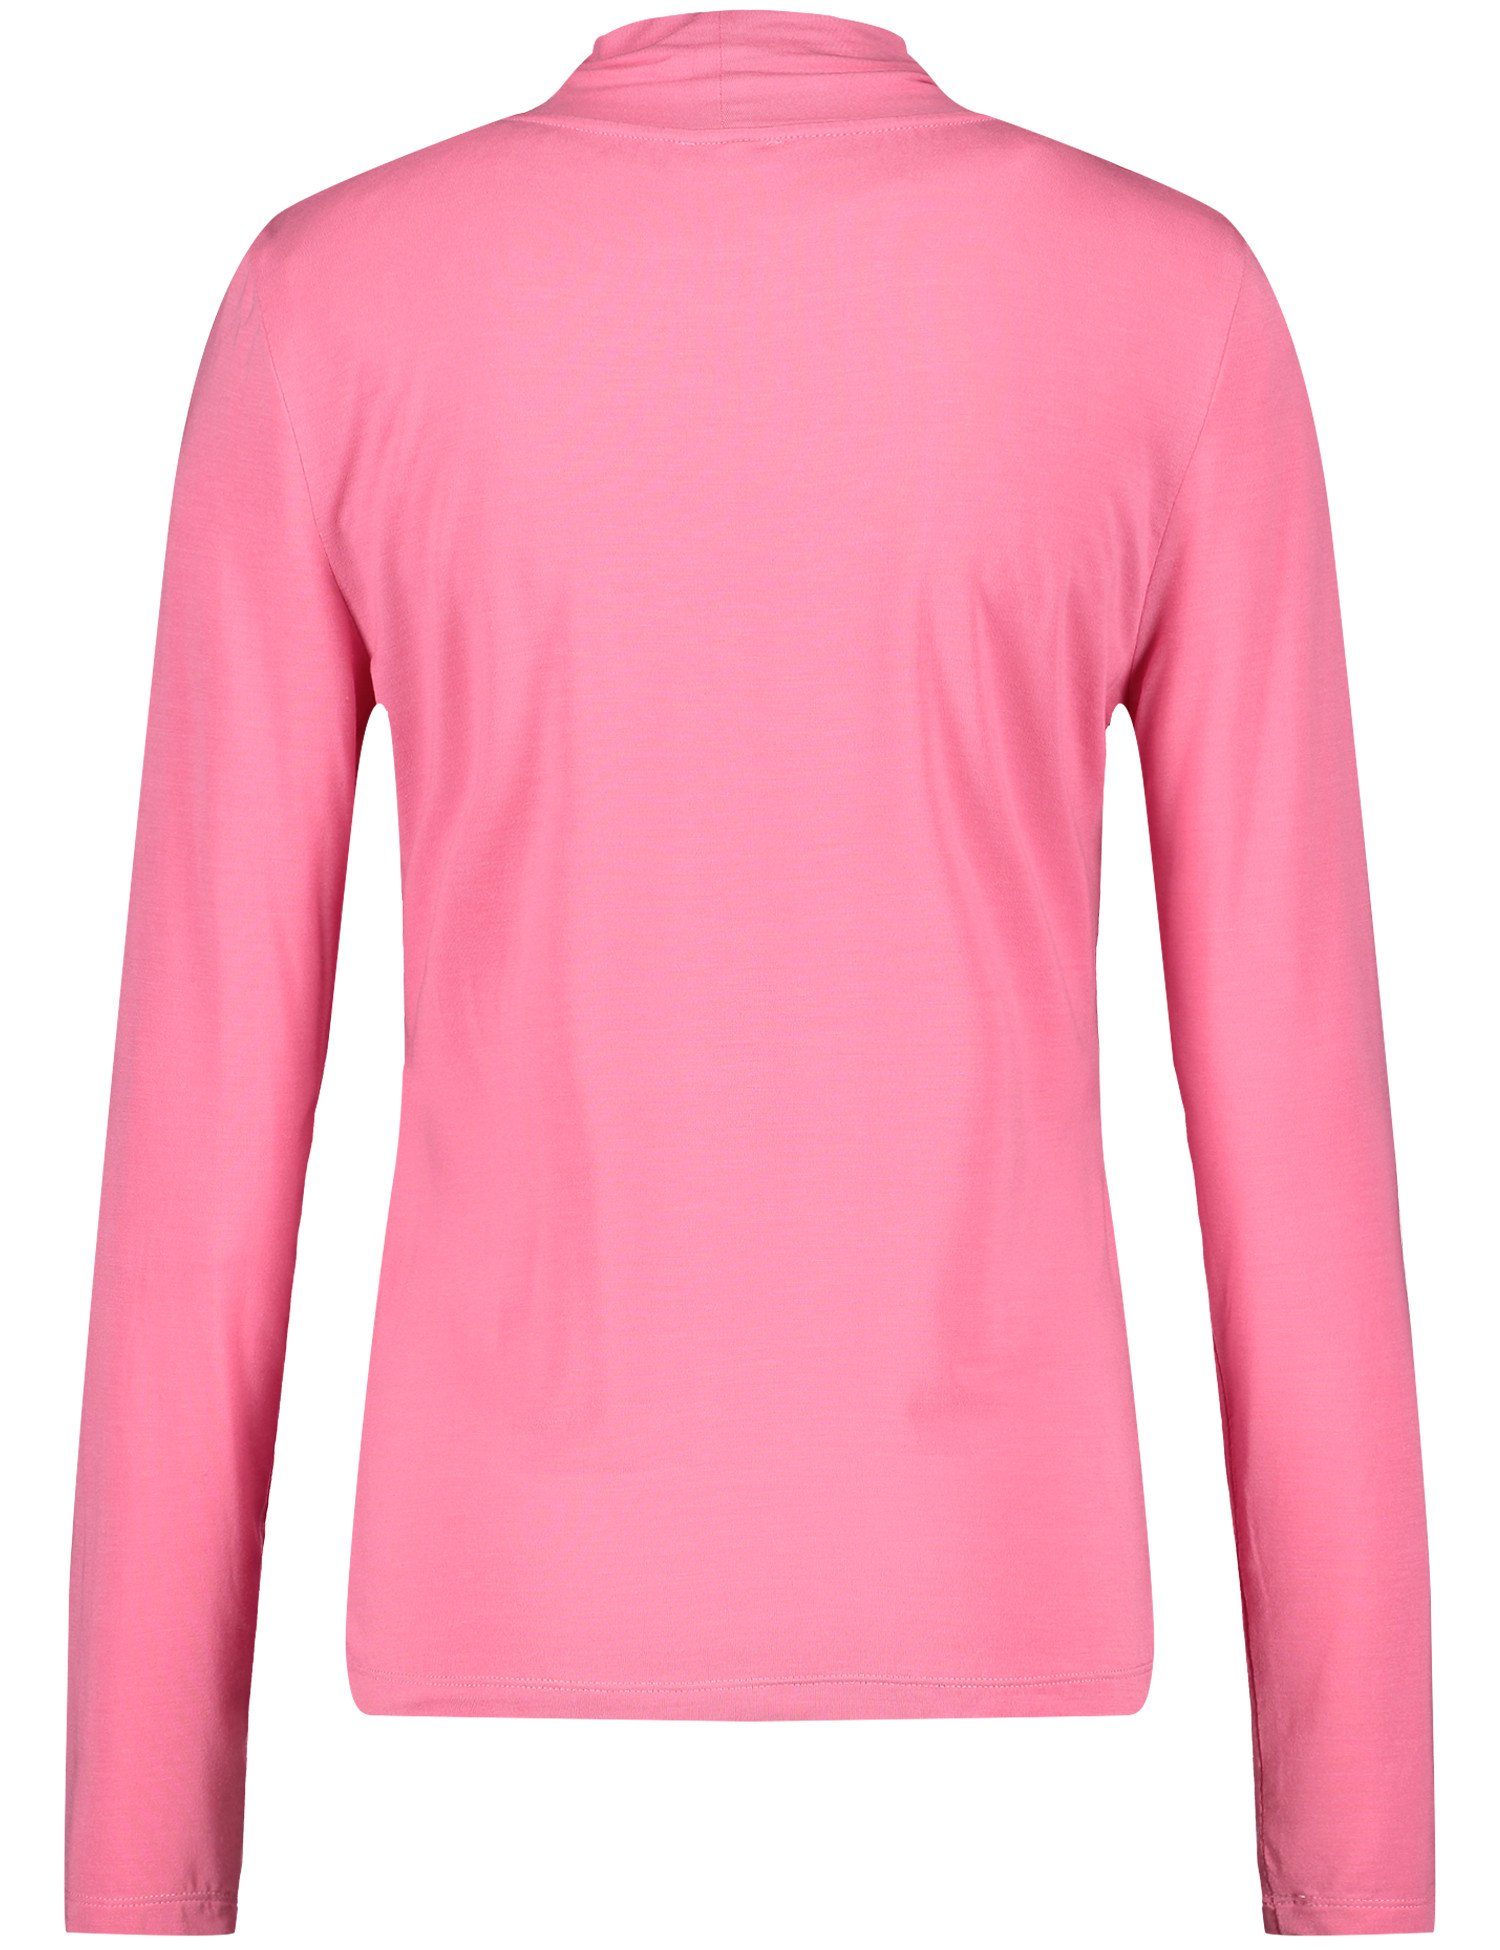 T-Shirt ROSE PINK WEBER 30894 GERRY